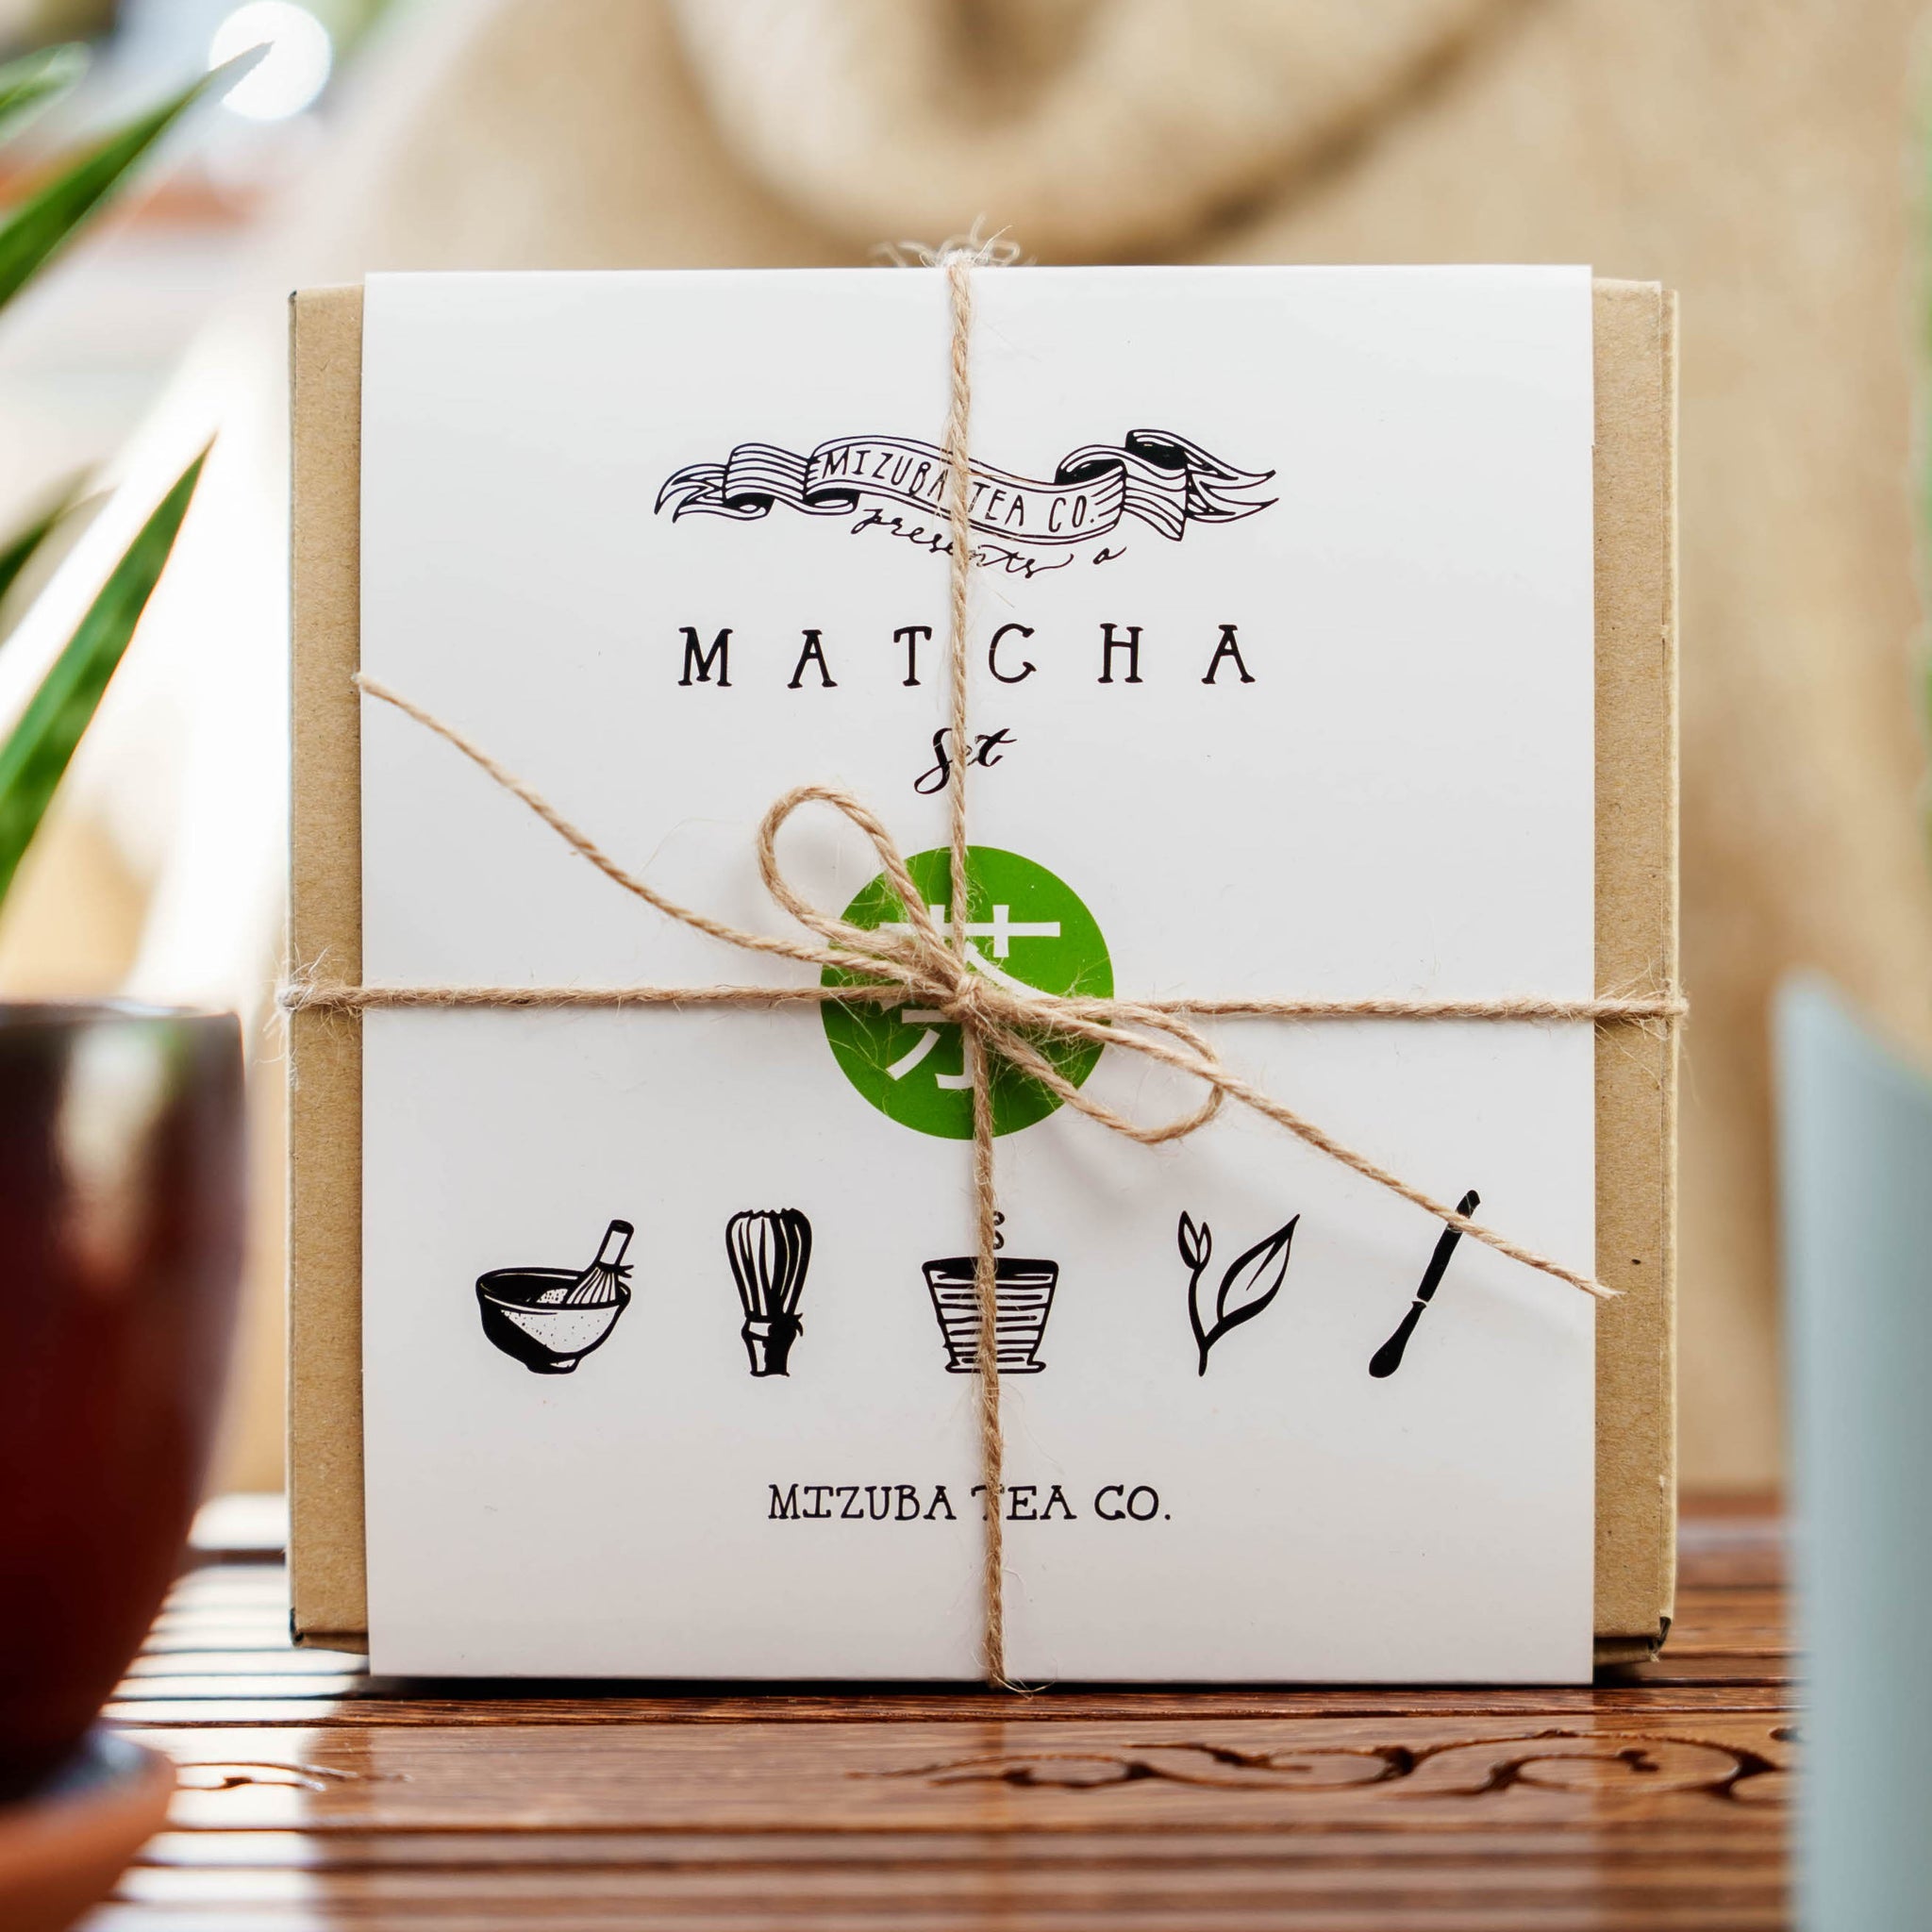 Matcha Green Tea Gift Set | Mizuba Tea Co.